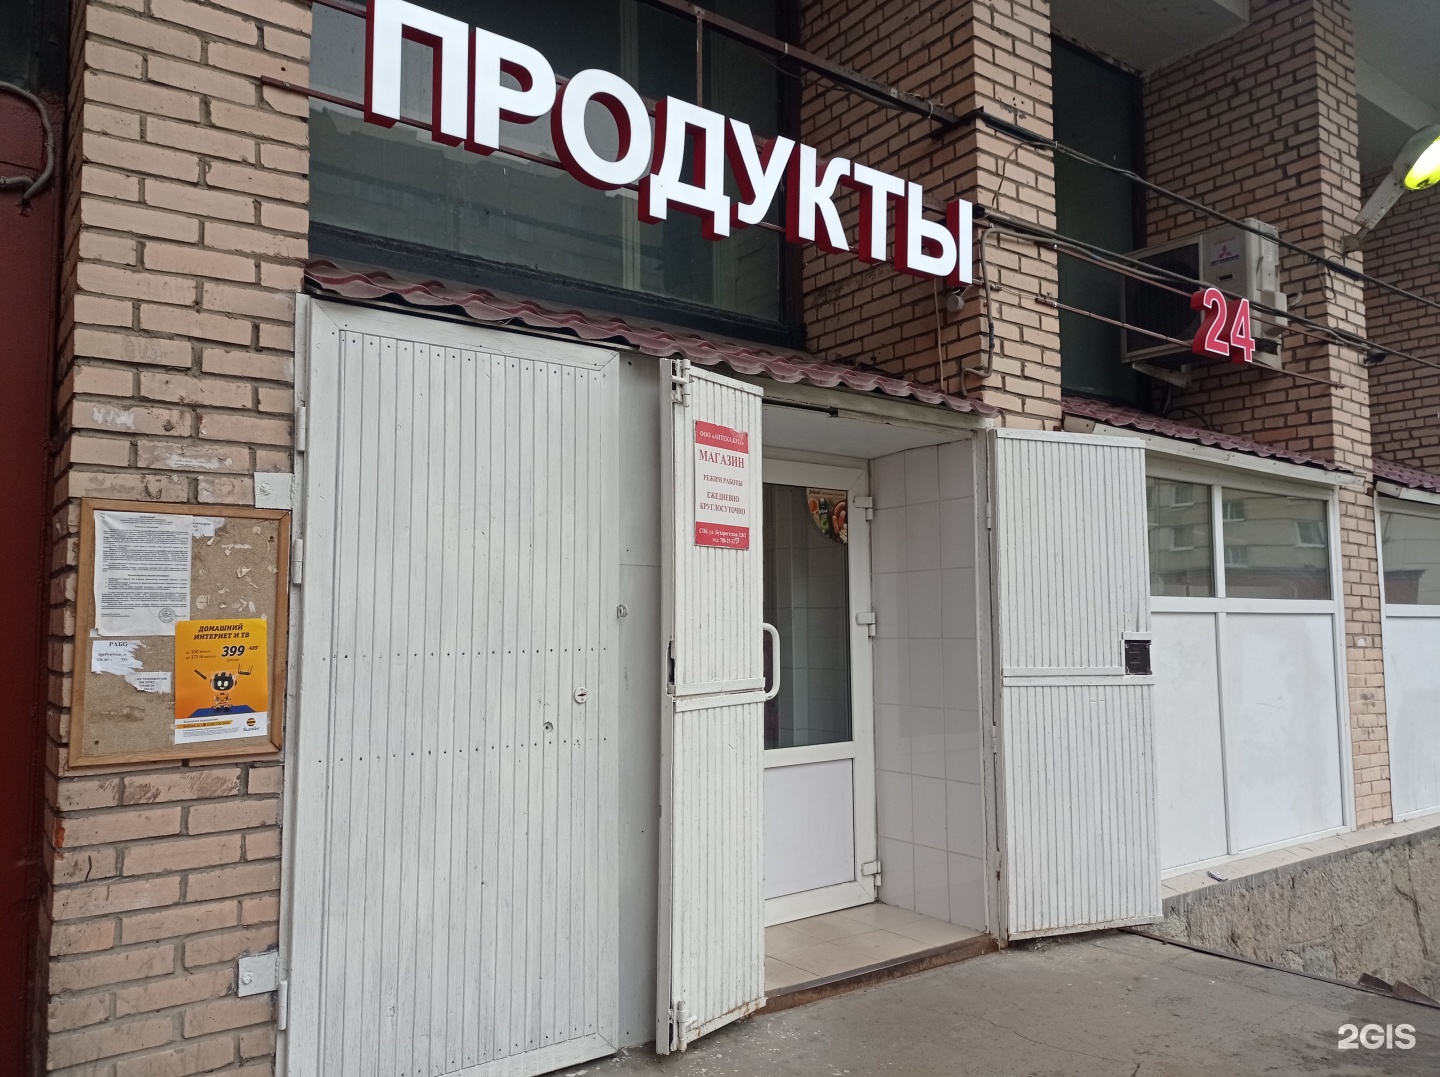 Ваша Аптека На Бухарестской